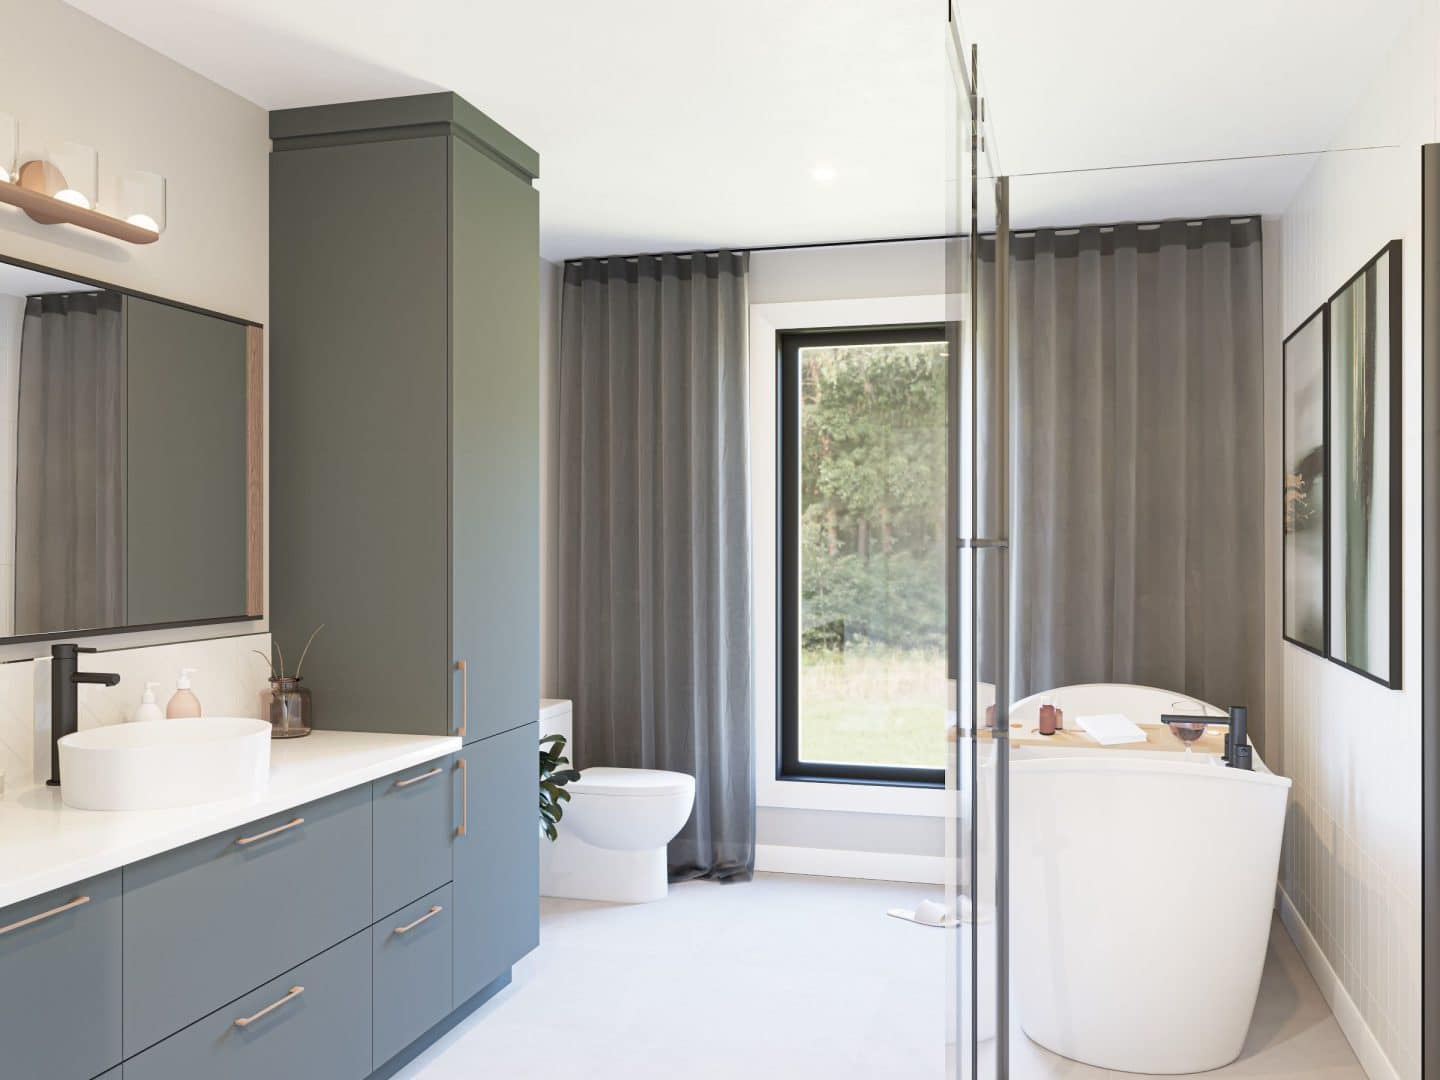 Le modèle Citana est une maison contemporaine de plain-pied. Vue de la salle de bain.